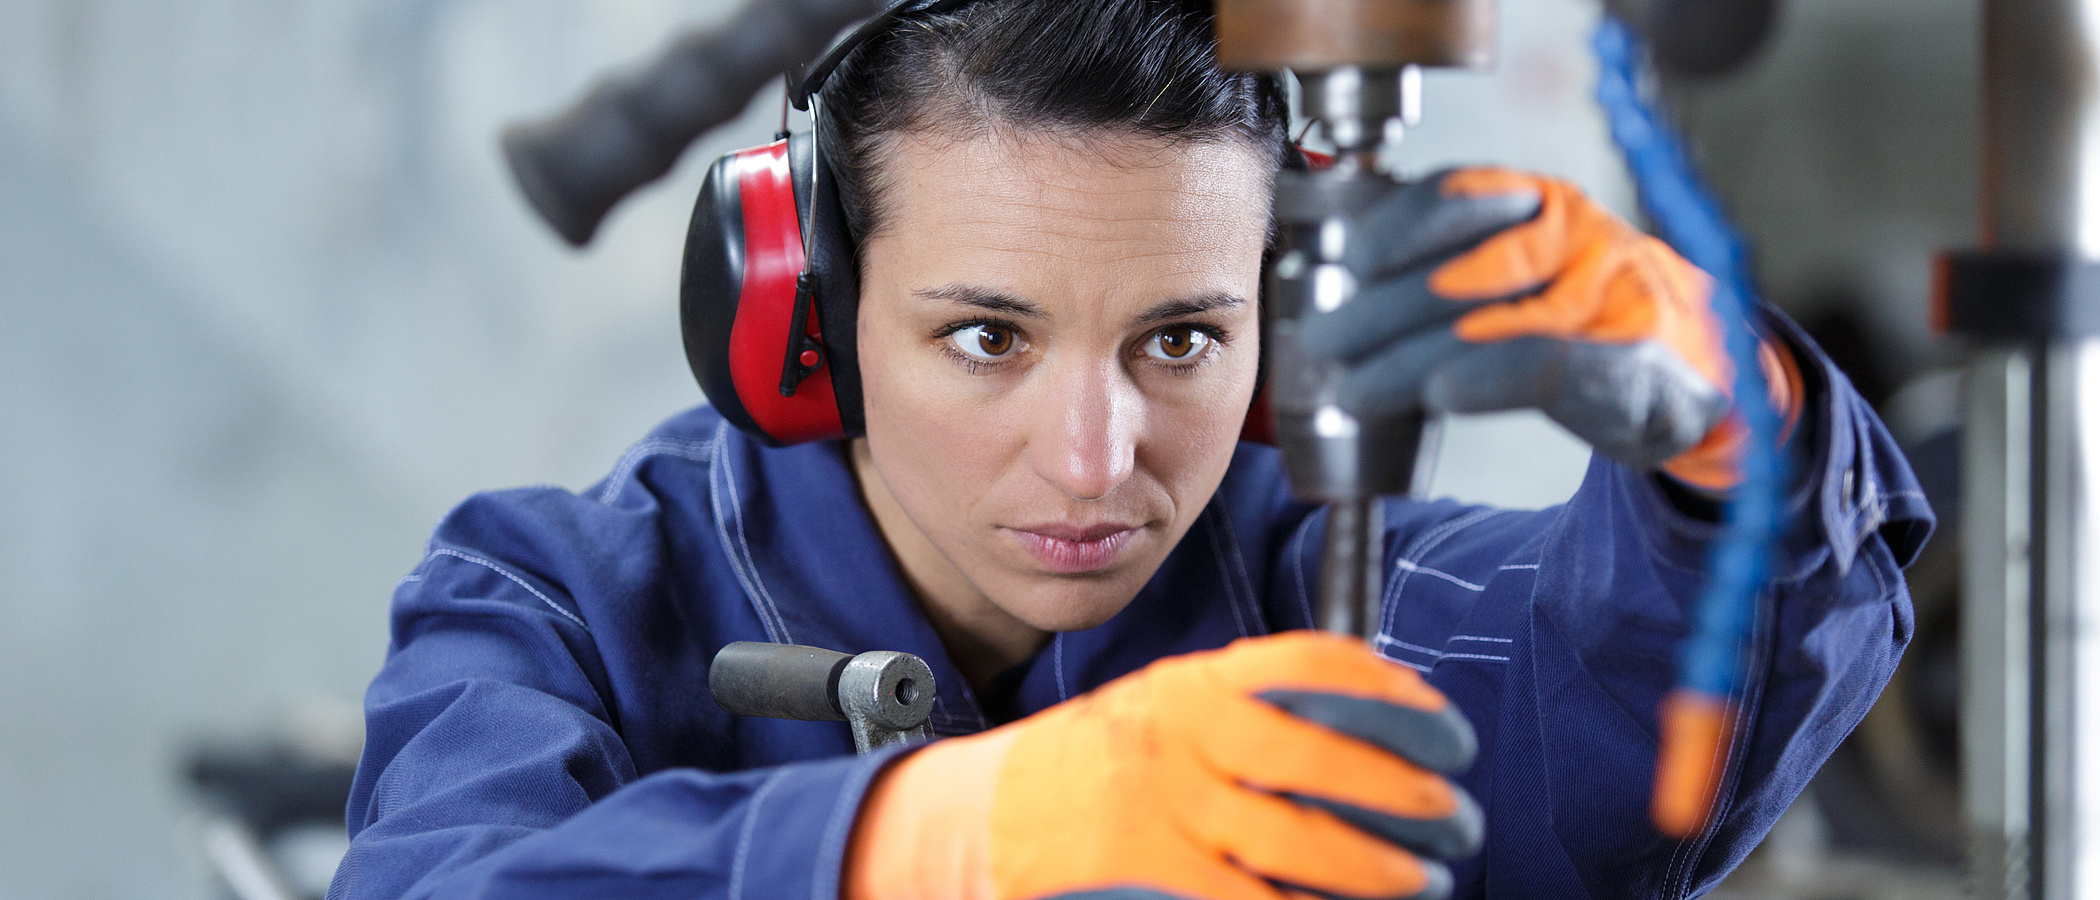 Handwerkerin mit roten Ohrenschützern und orangen Handschuhen konzentriert sich auf ihre Arbeit an einer Drechselmaschine.